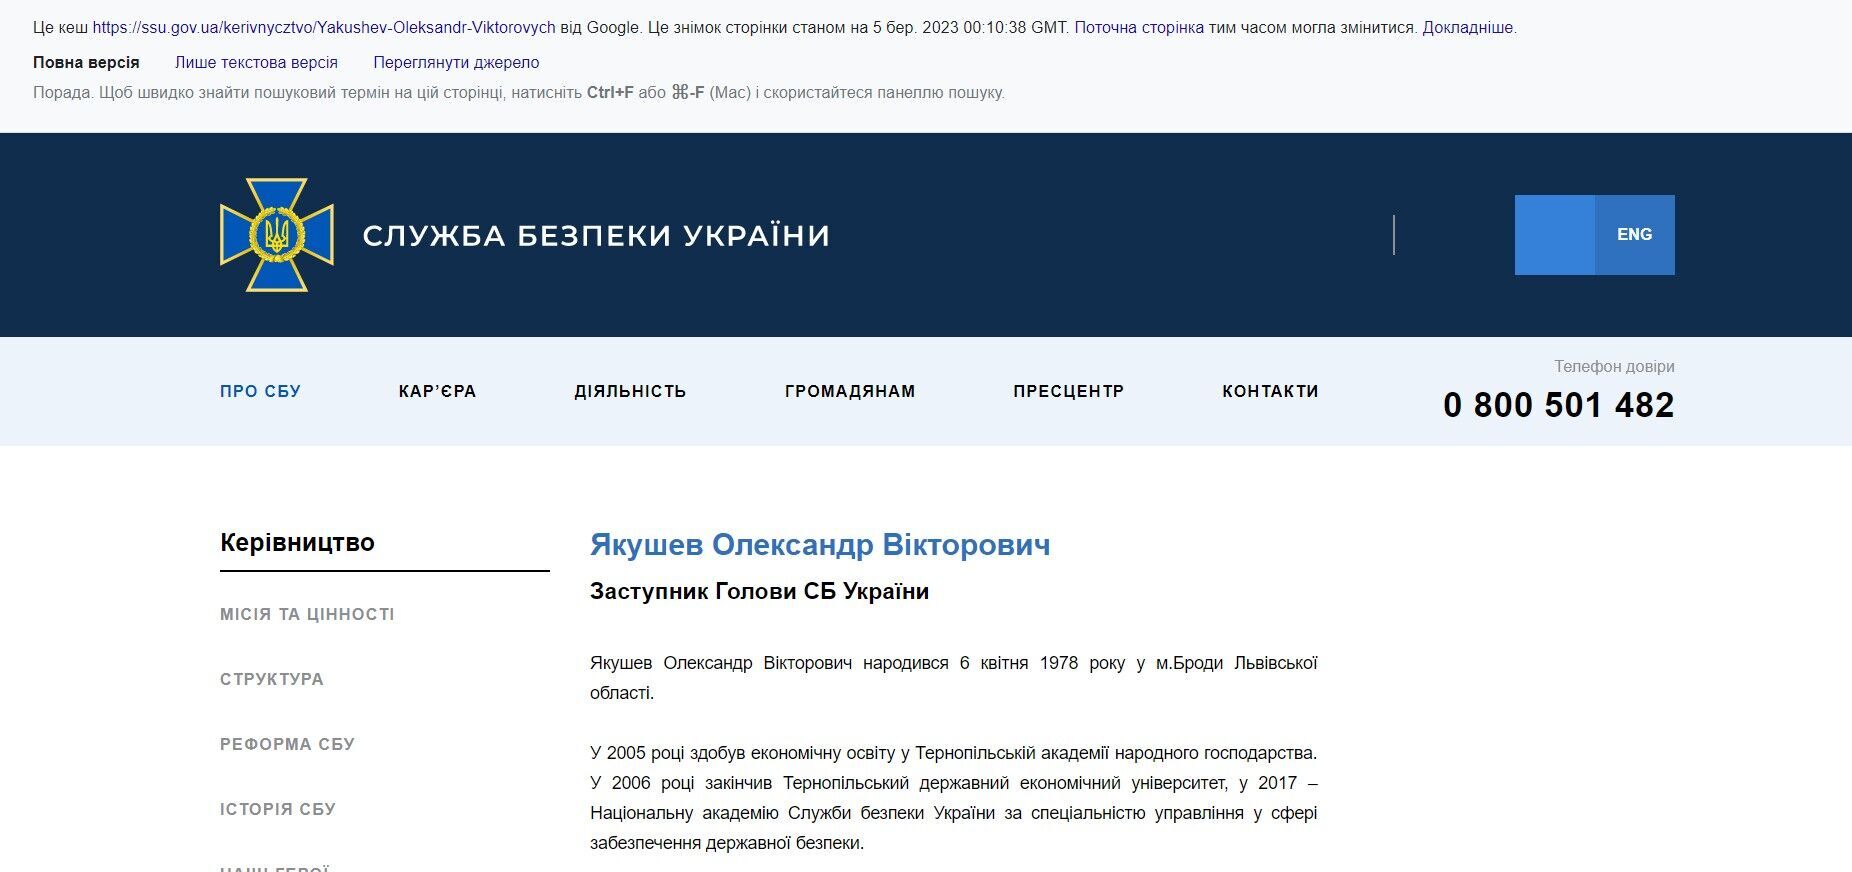 Зеленский провел массированное увольнение в руководстве СБУ: задело столицу и областные управления - что известно